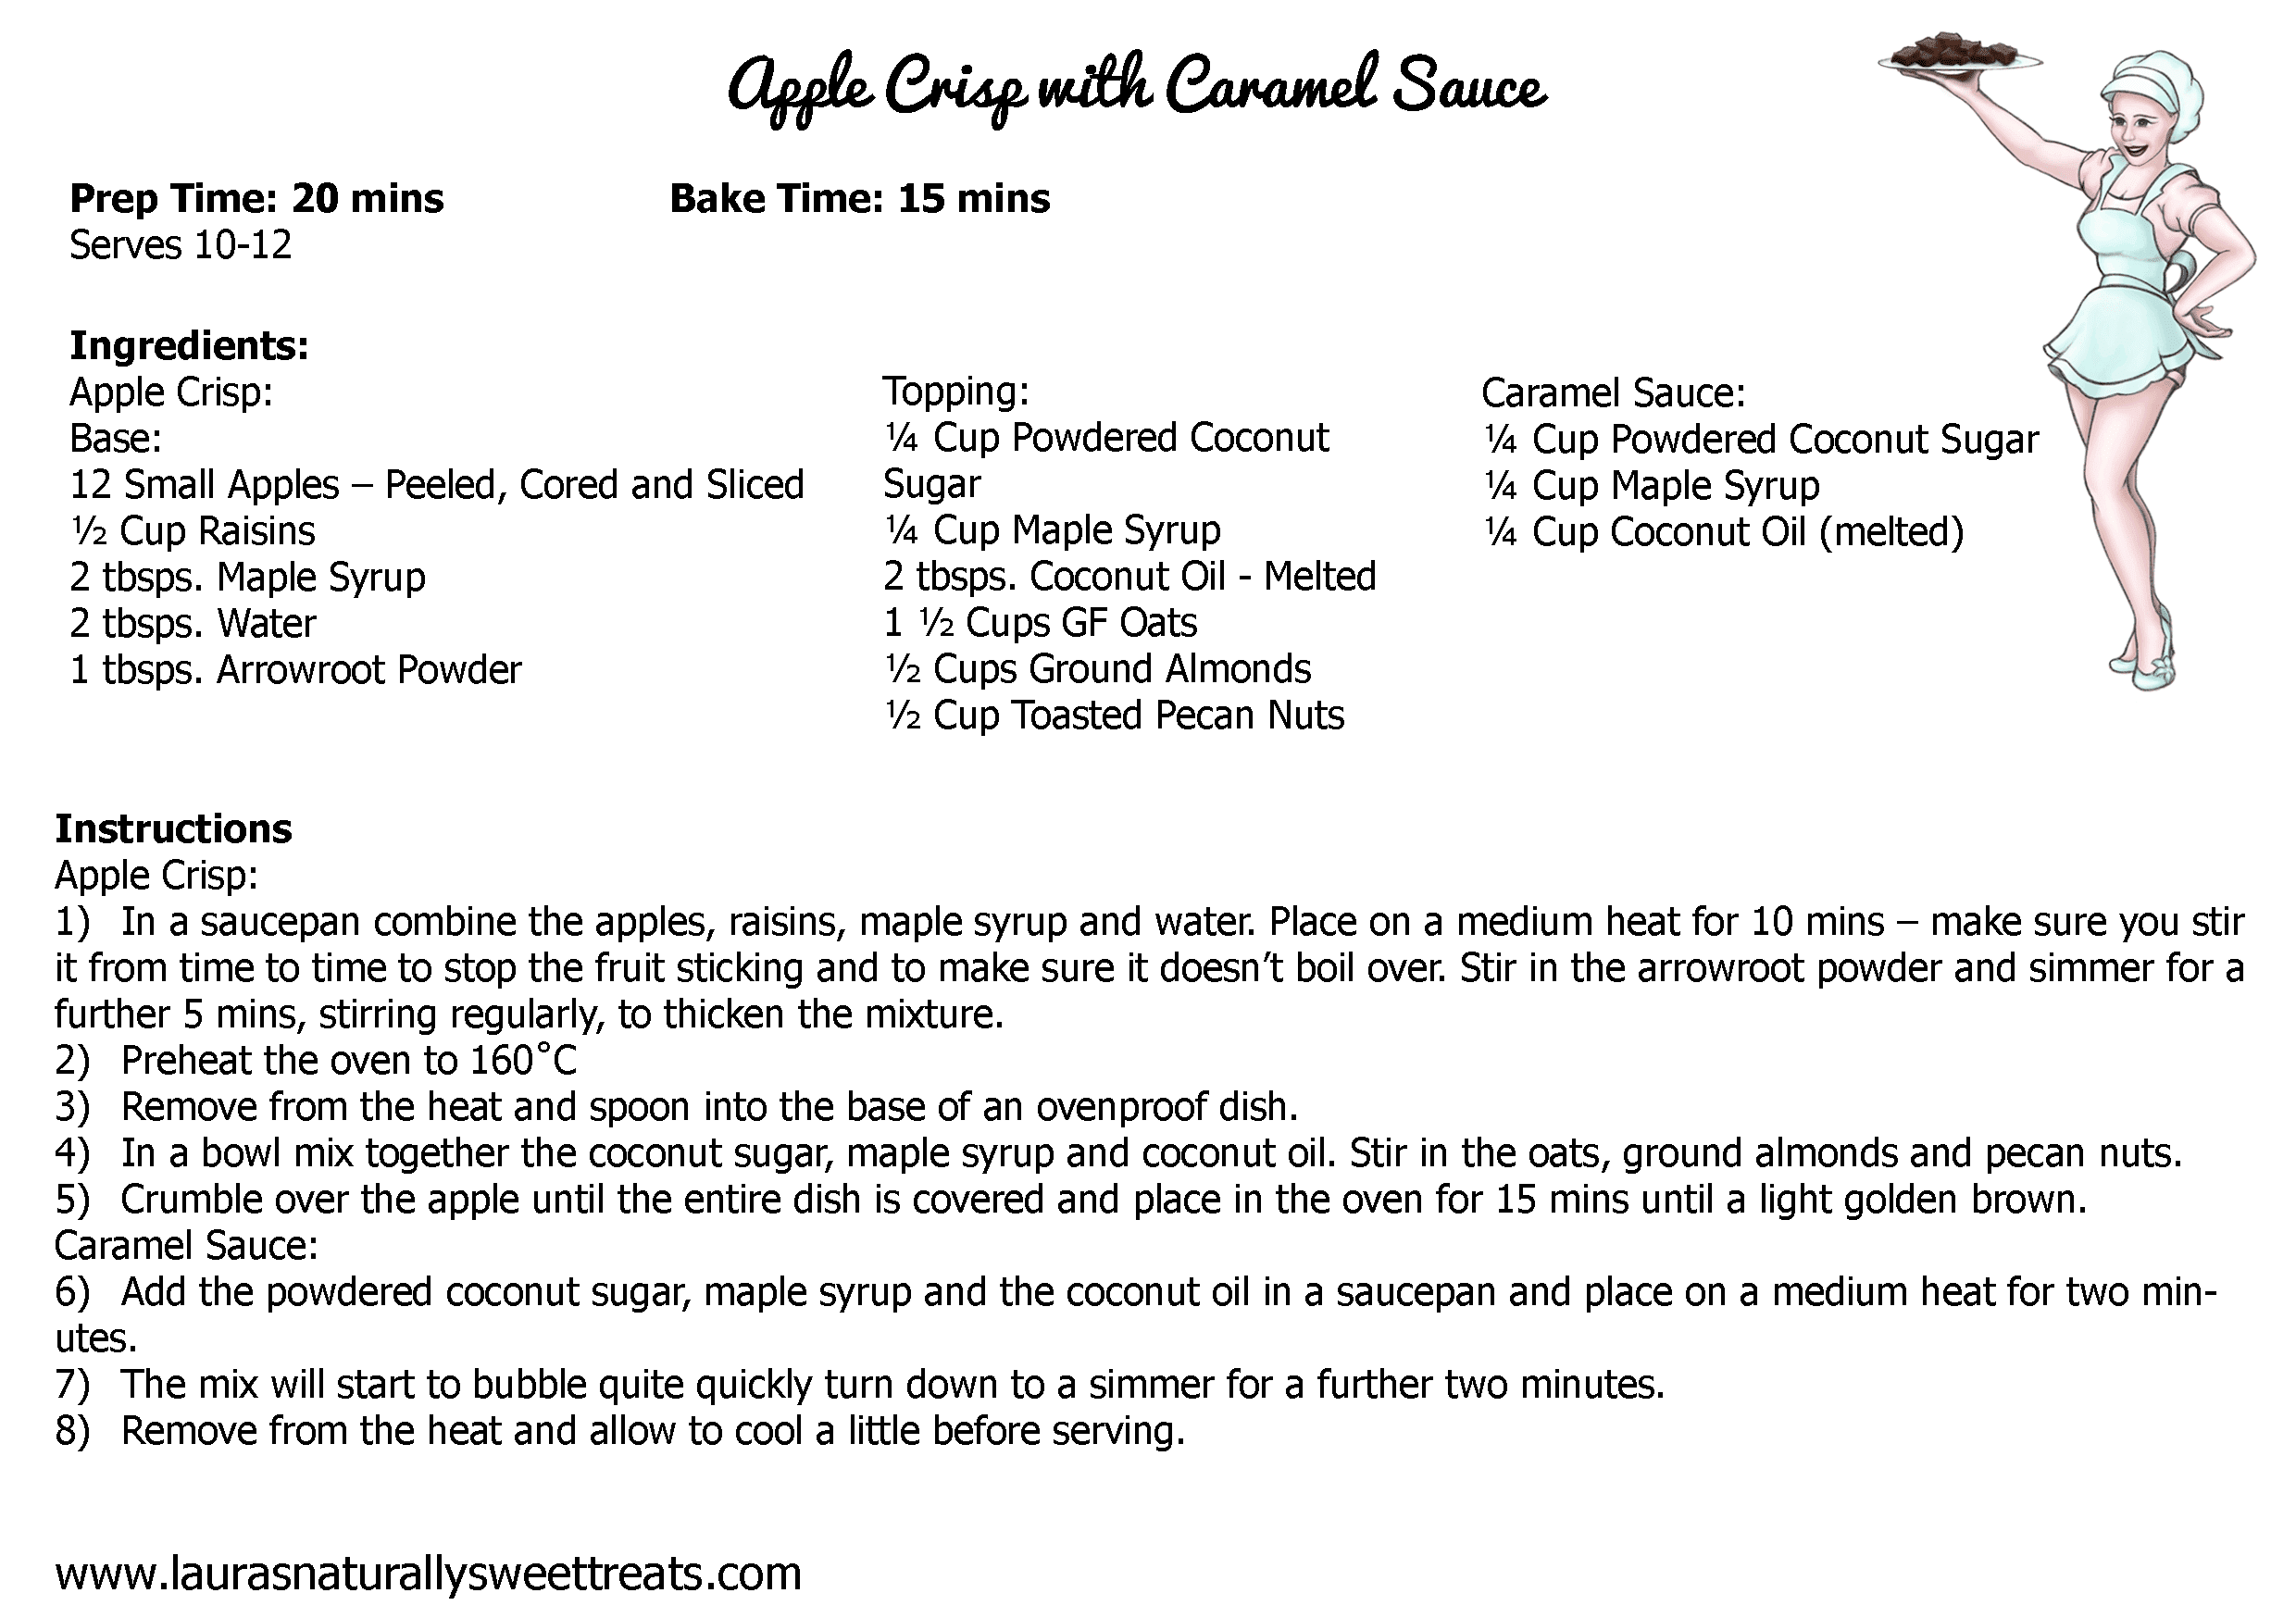 apple crisp with caramel sauce recipe card